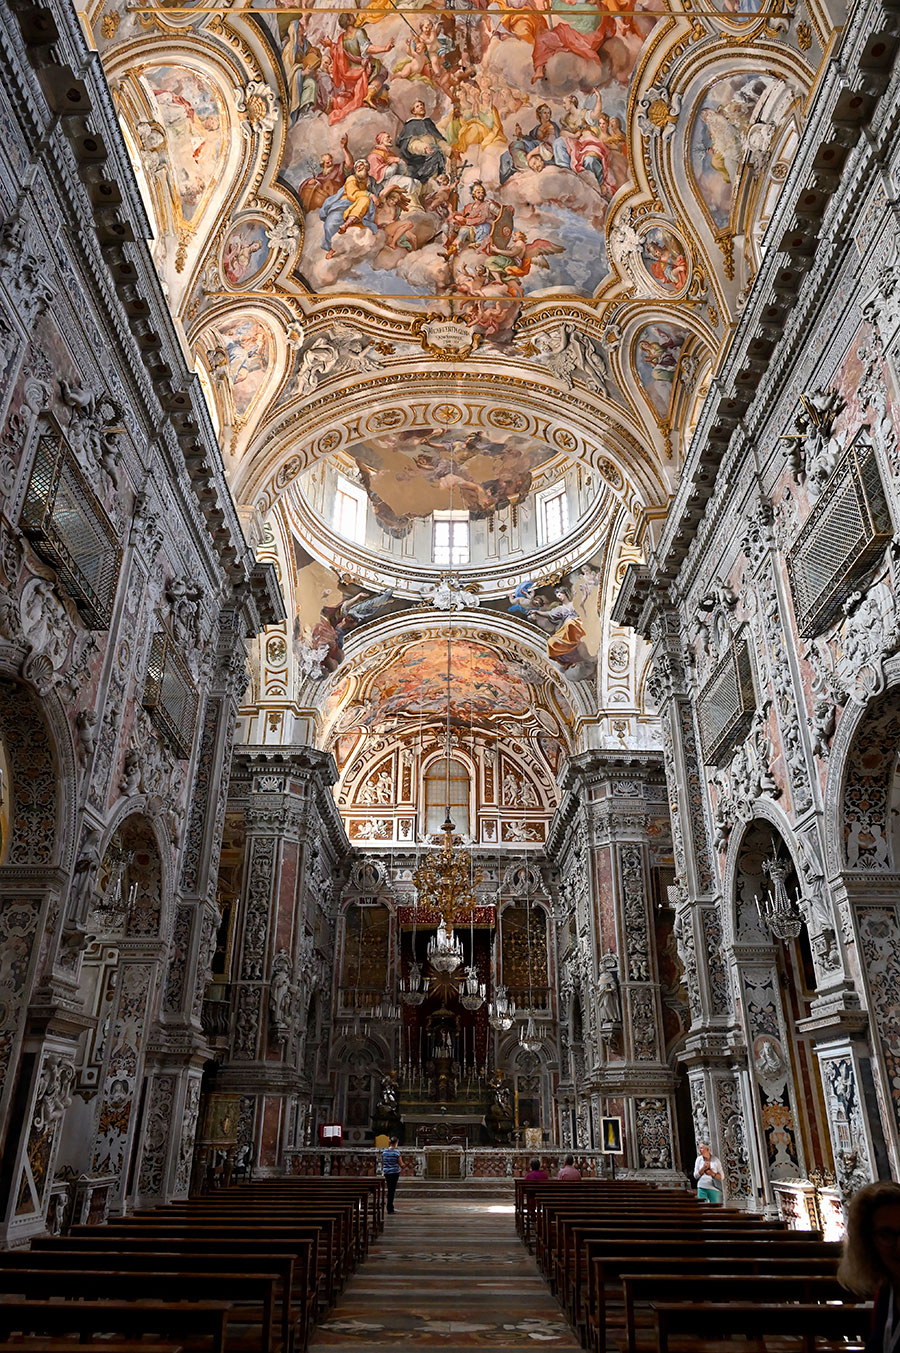 パレルモの最も美しい教会のひとつ、サンタ・カテリーナ教会。